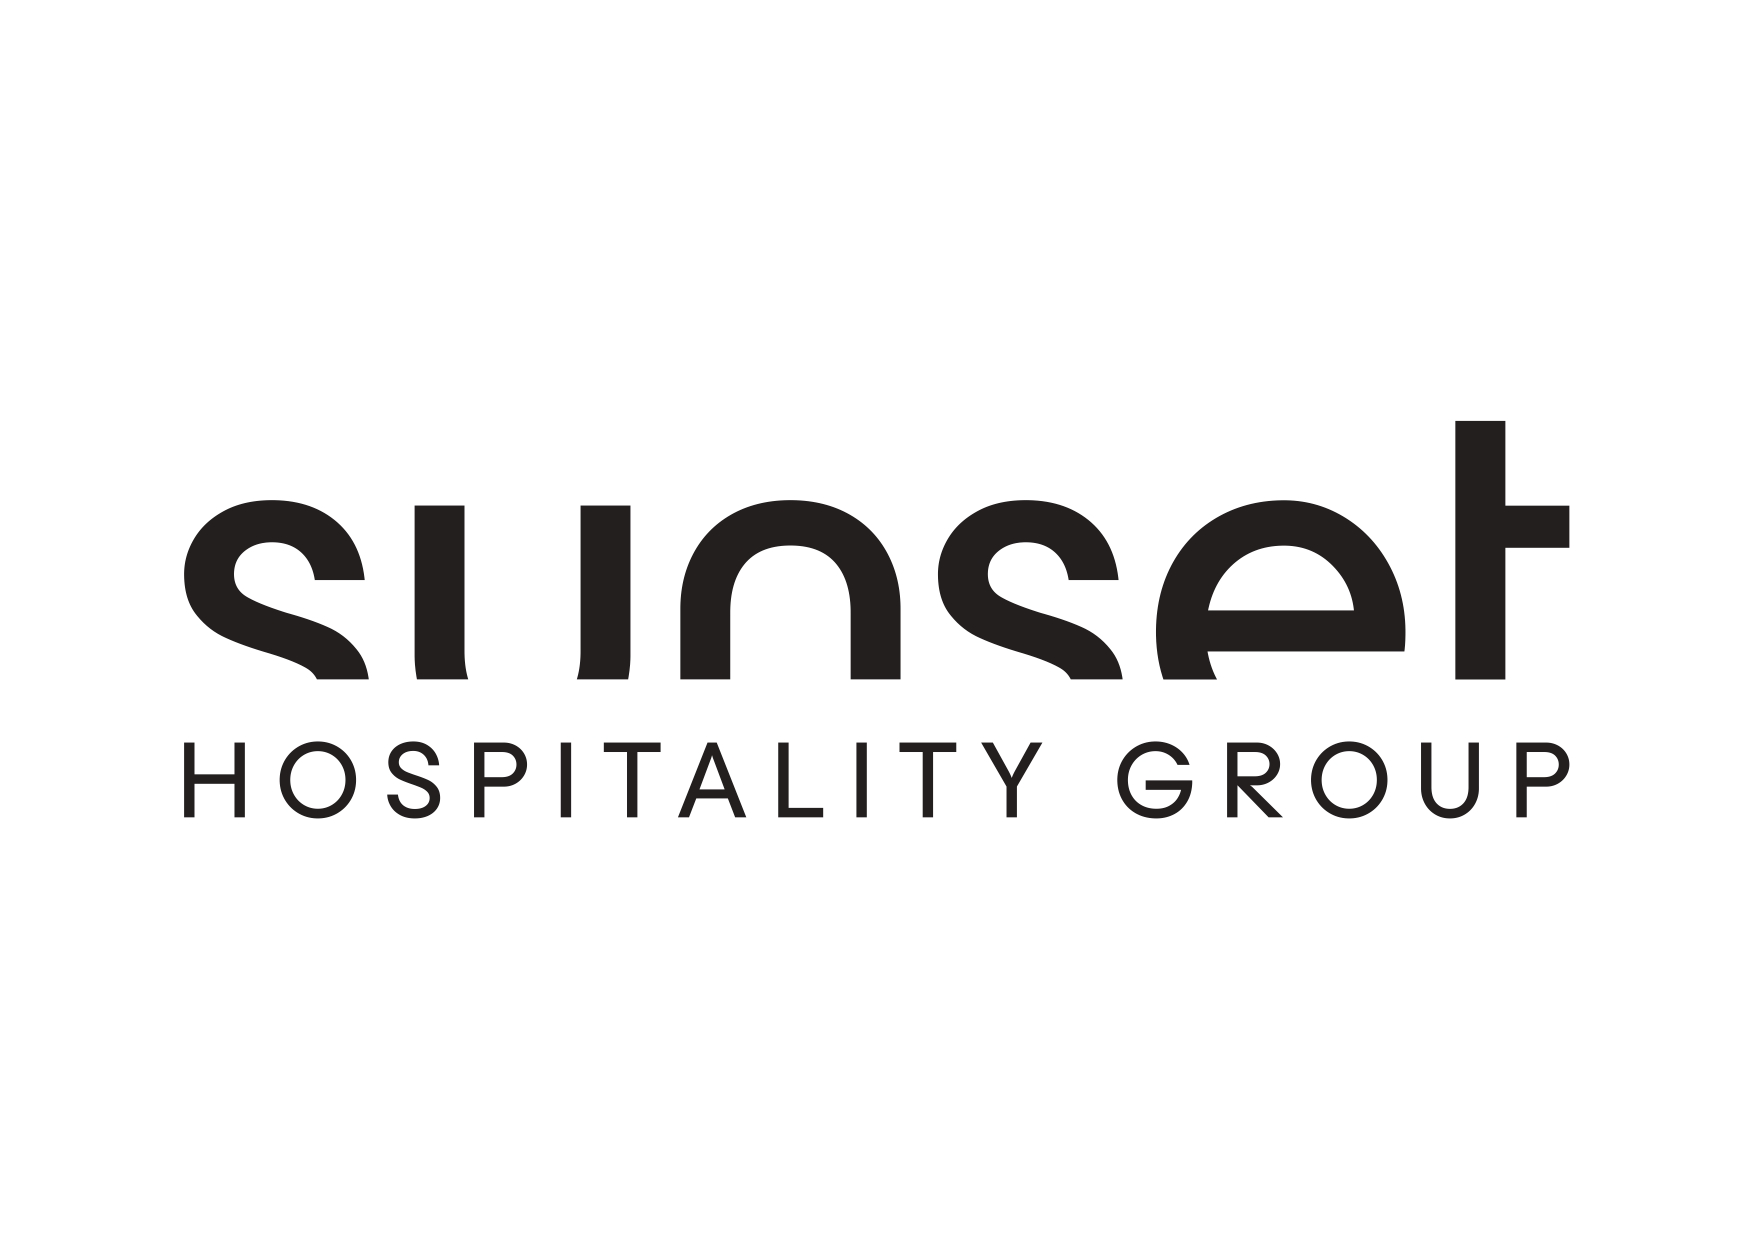 Sunset Hospitality Group